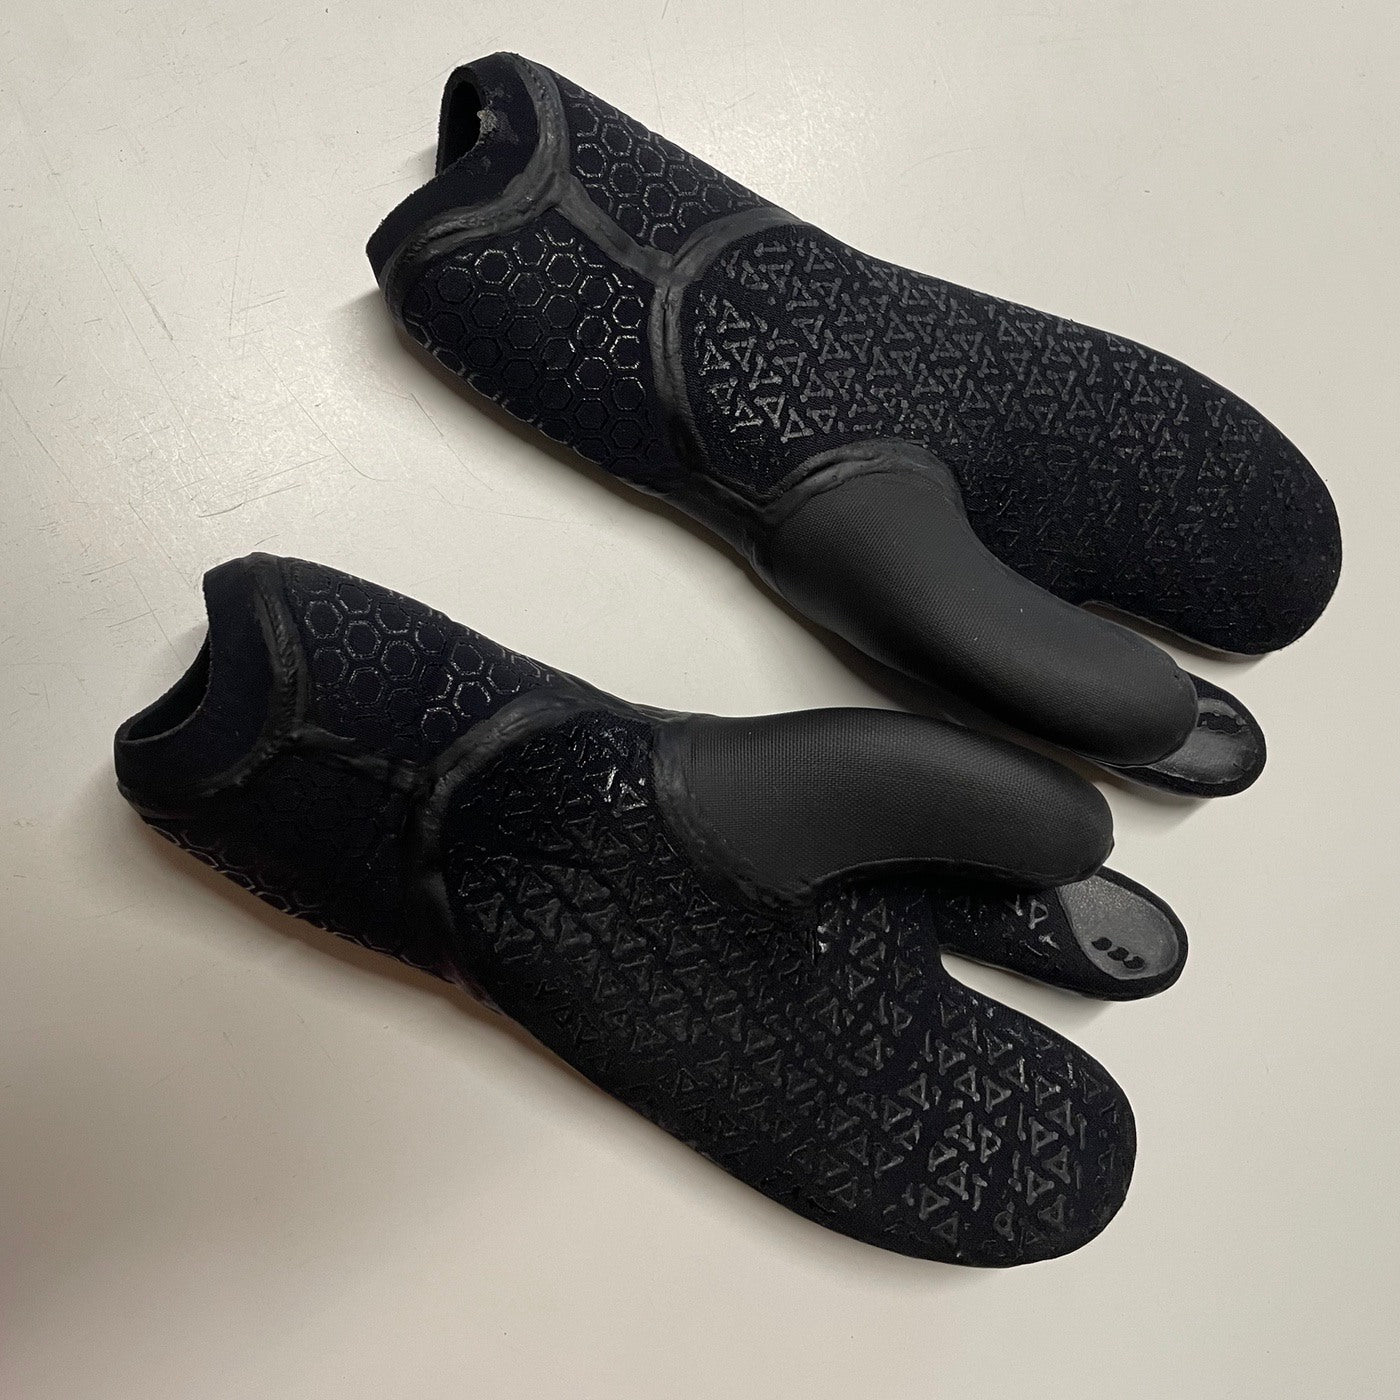 Gloves 5mm XCEL Infiniti 3 Finger Lobster – Surf Ontario